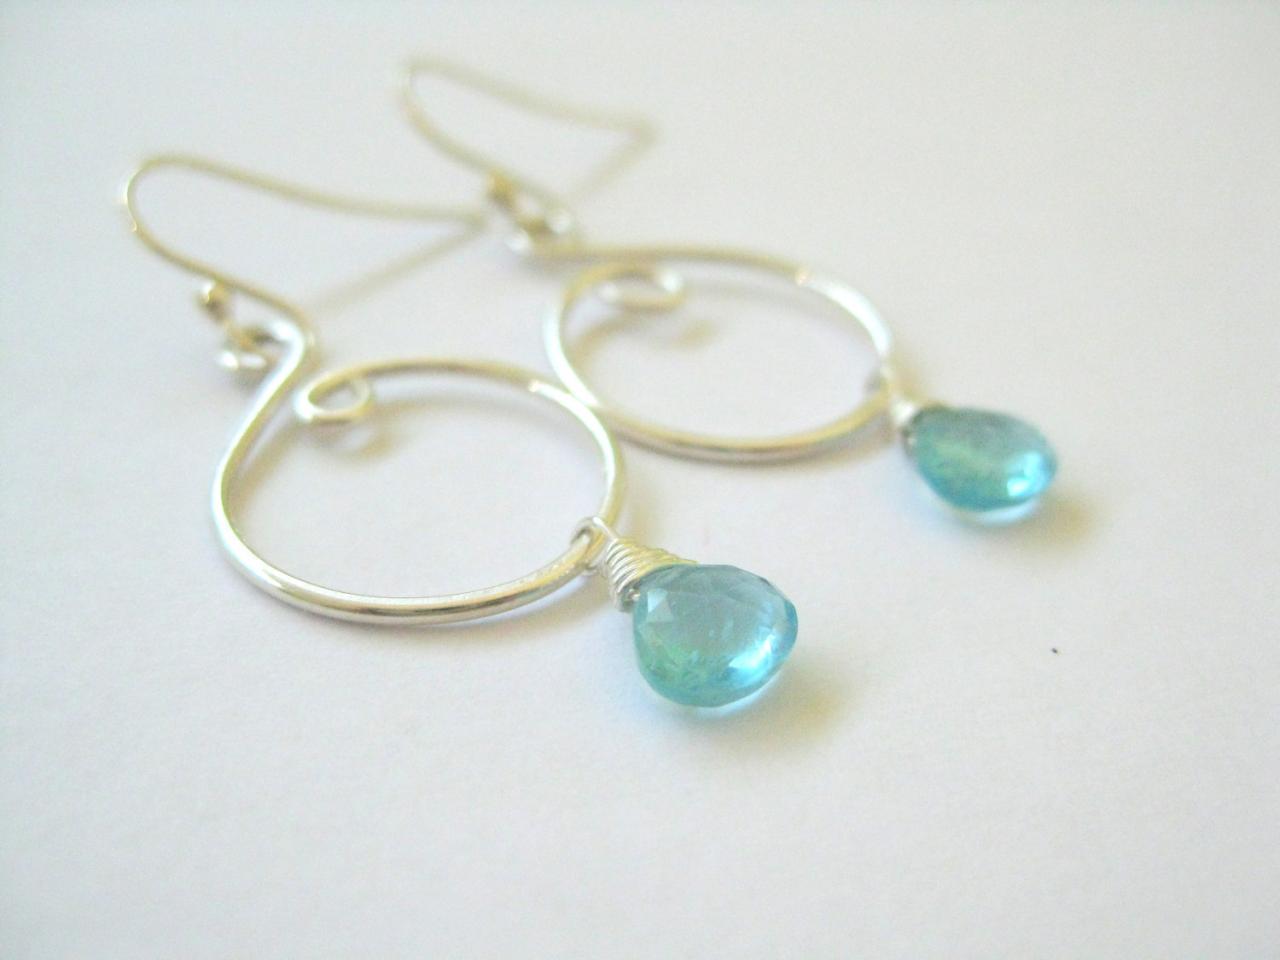 Blue Gemstone Earrings, Apatite Silver Swirl Earrings, Unique Curvy Design